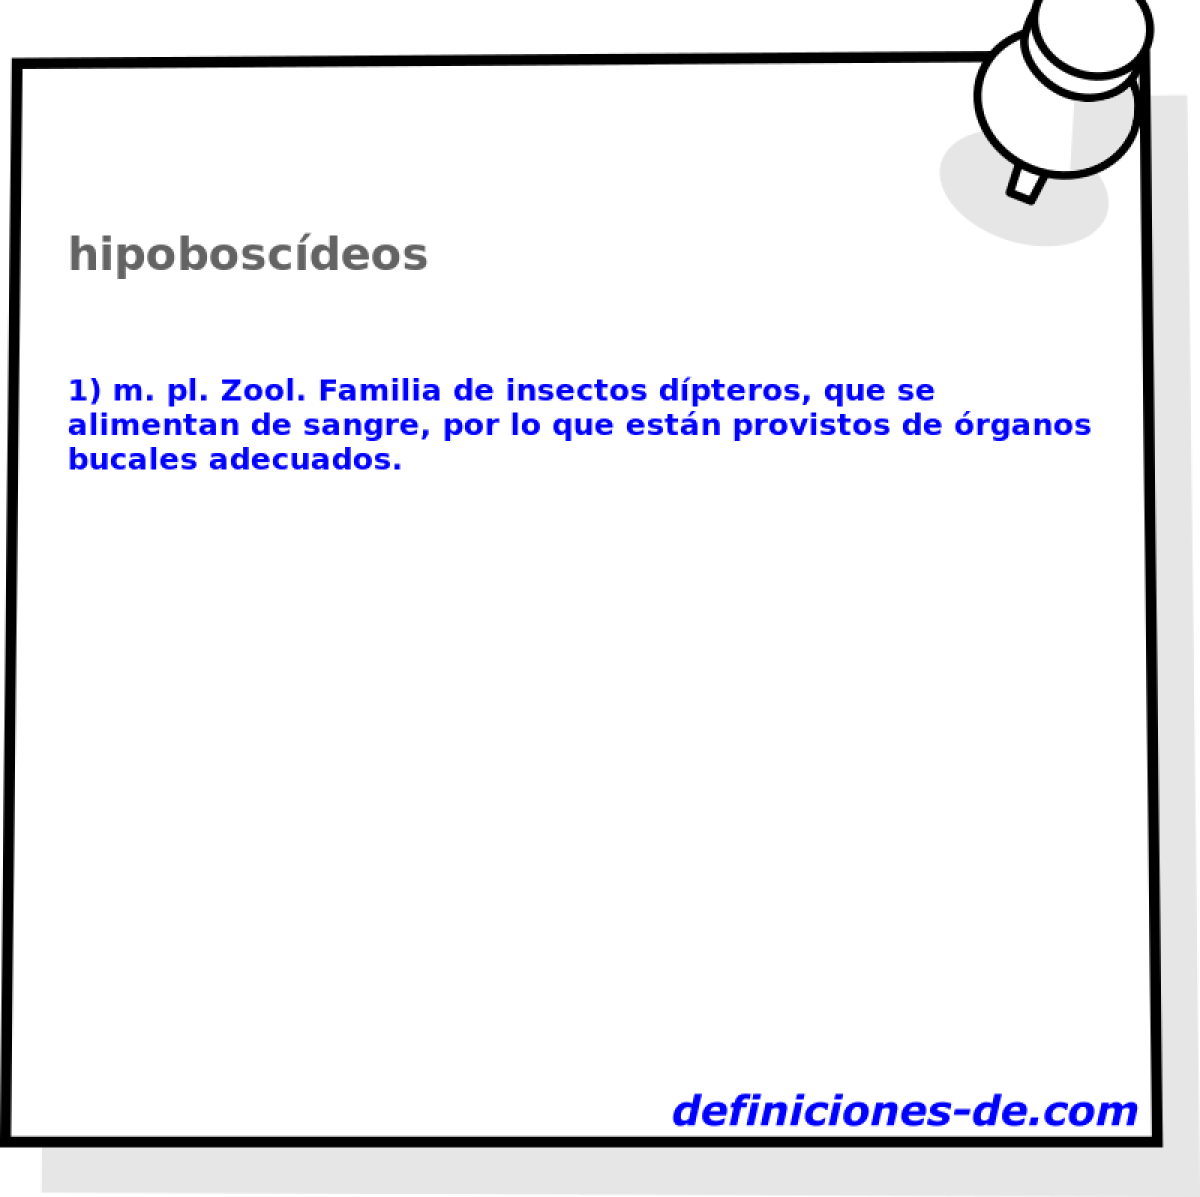 hipoboscdeos 